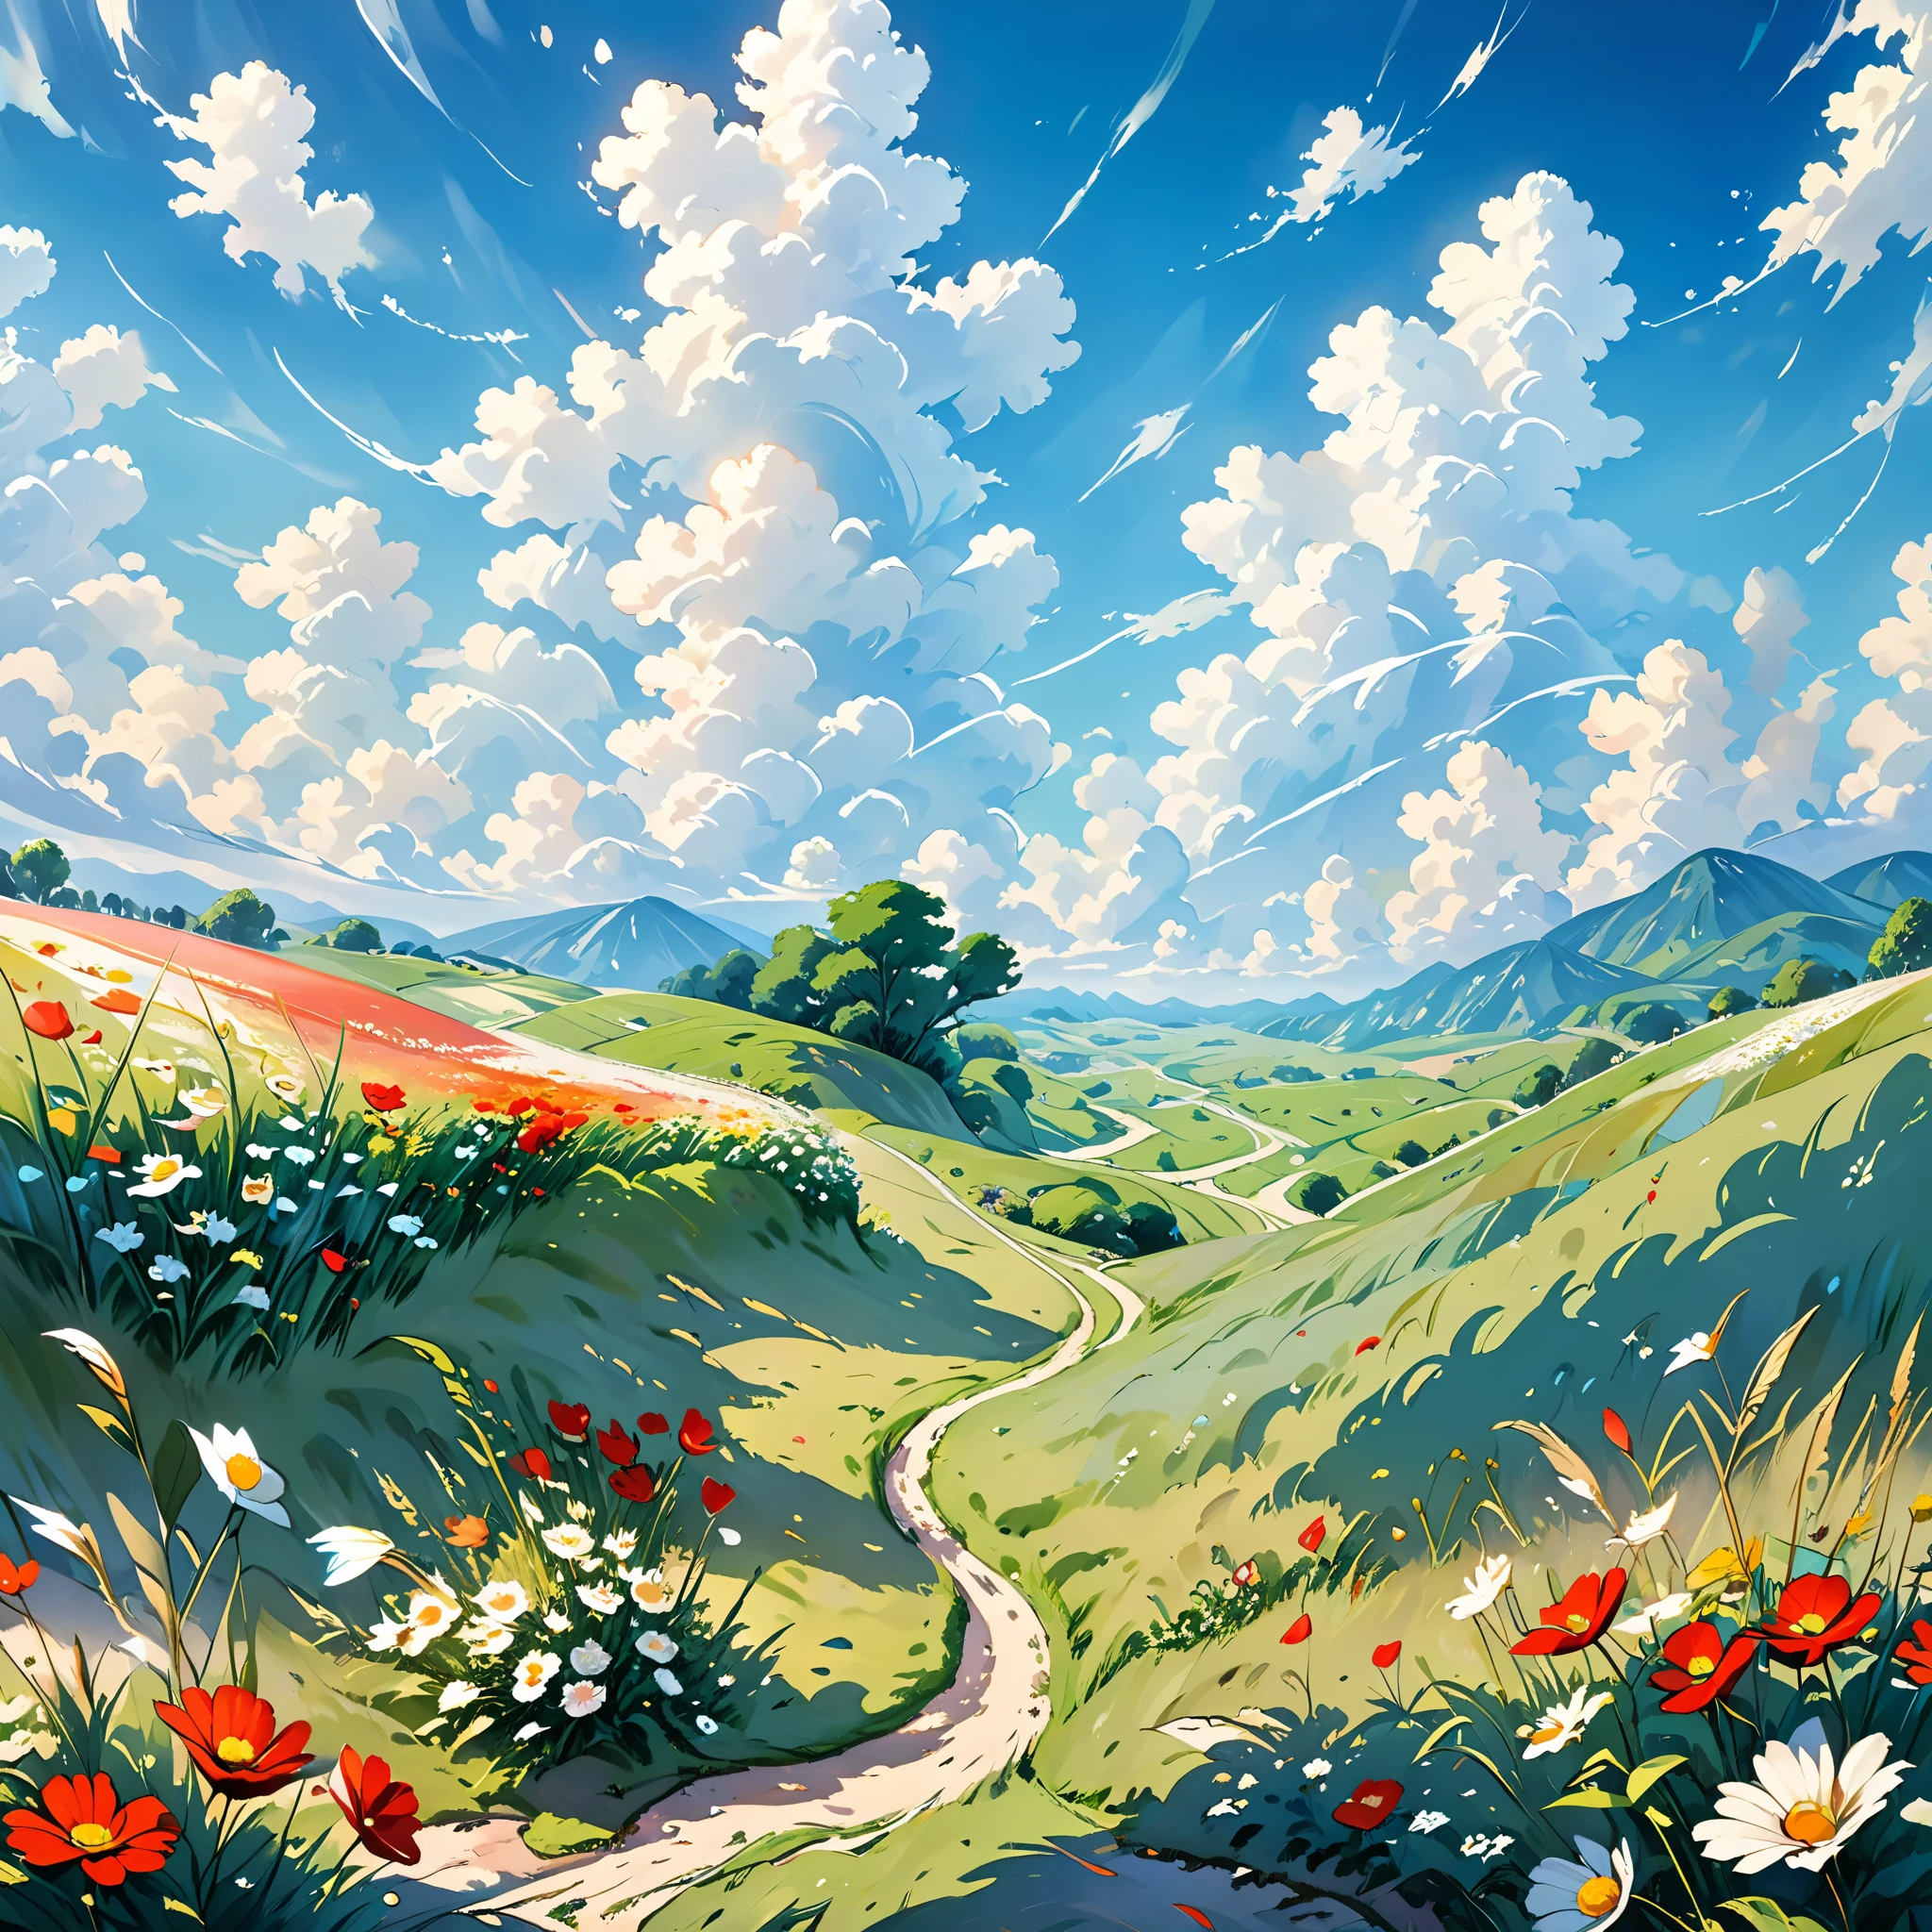 現実的, 本物, 美しく素晴らしい風景油絵スタジオジブリ宮崎駿&#39;青い空と白い雲の花びらの草原 --v6